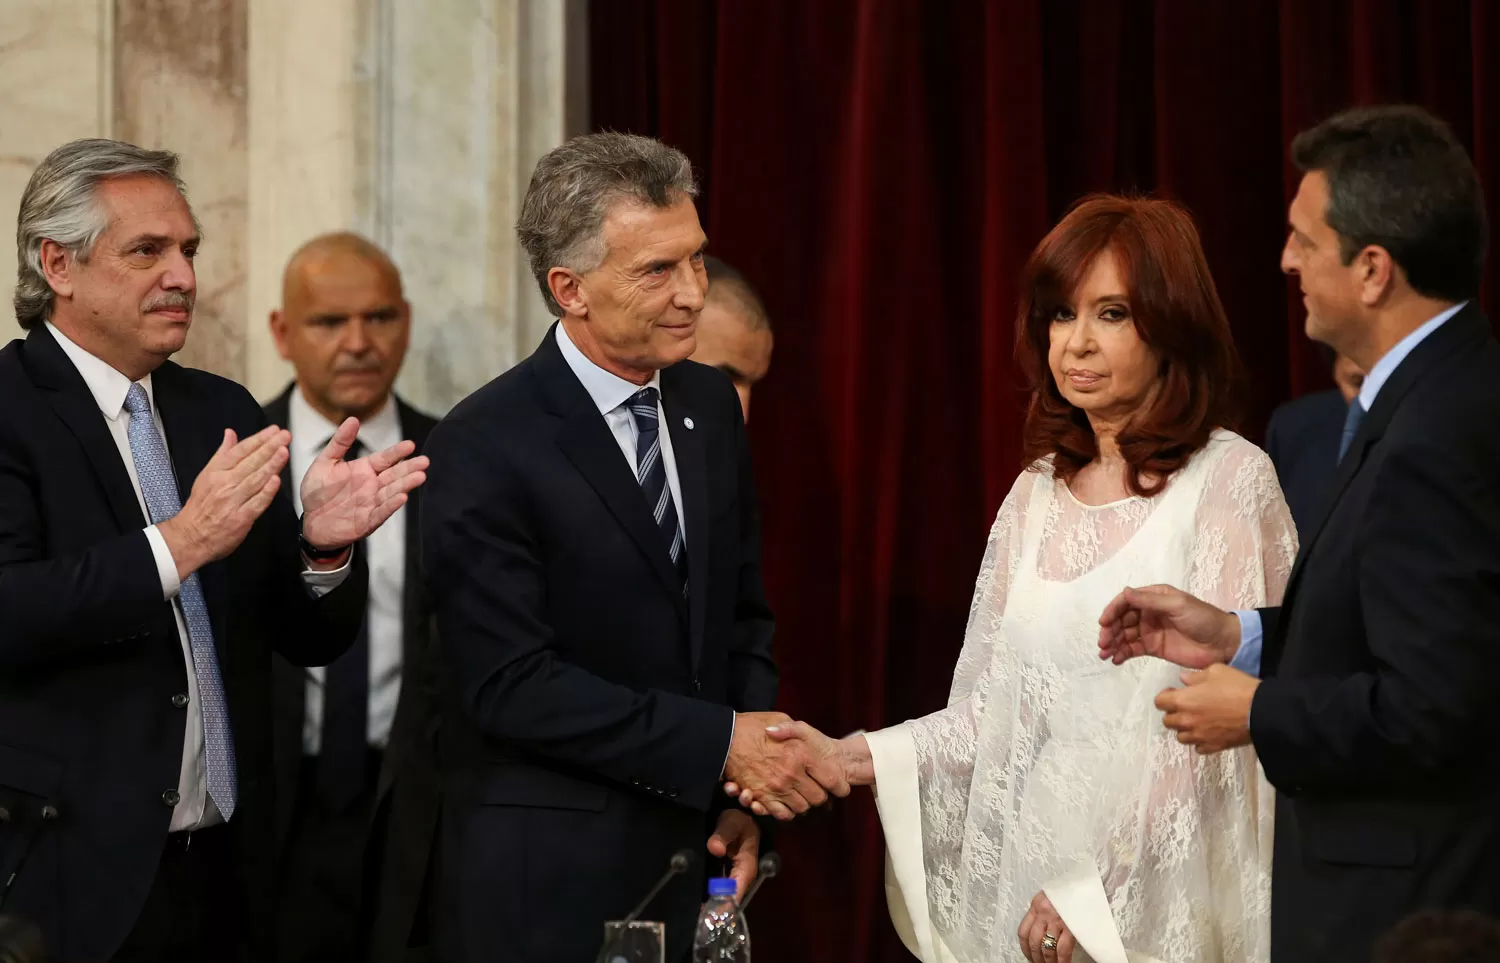 Sondeo LA GACETA: ¿qué opinás del saludo de Cristina a Macri?